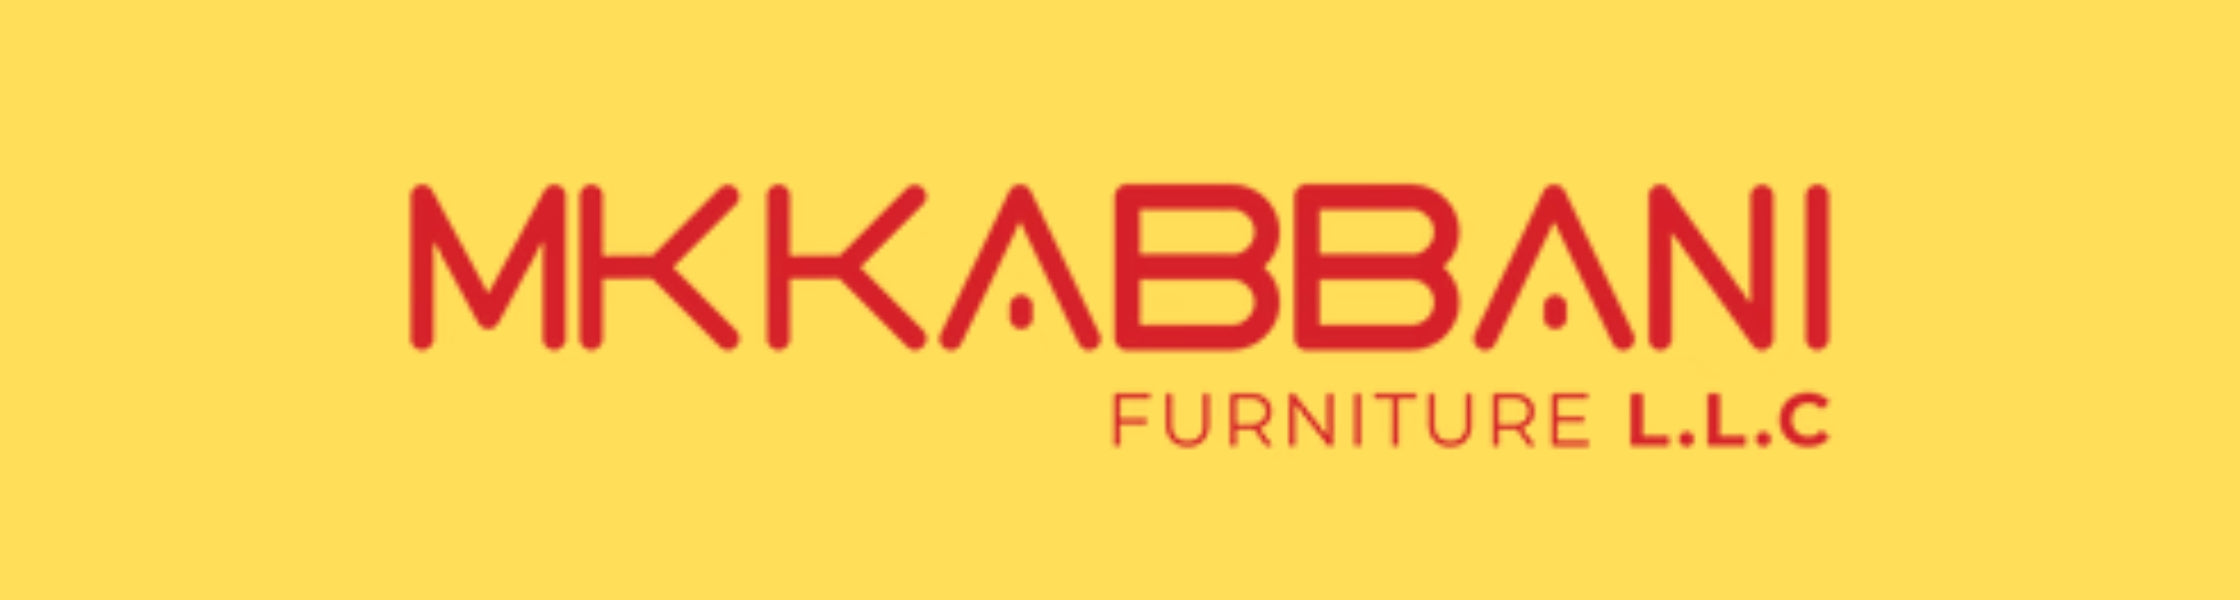 Rotai massage chair retail store partner Mk Kabbani